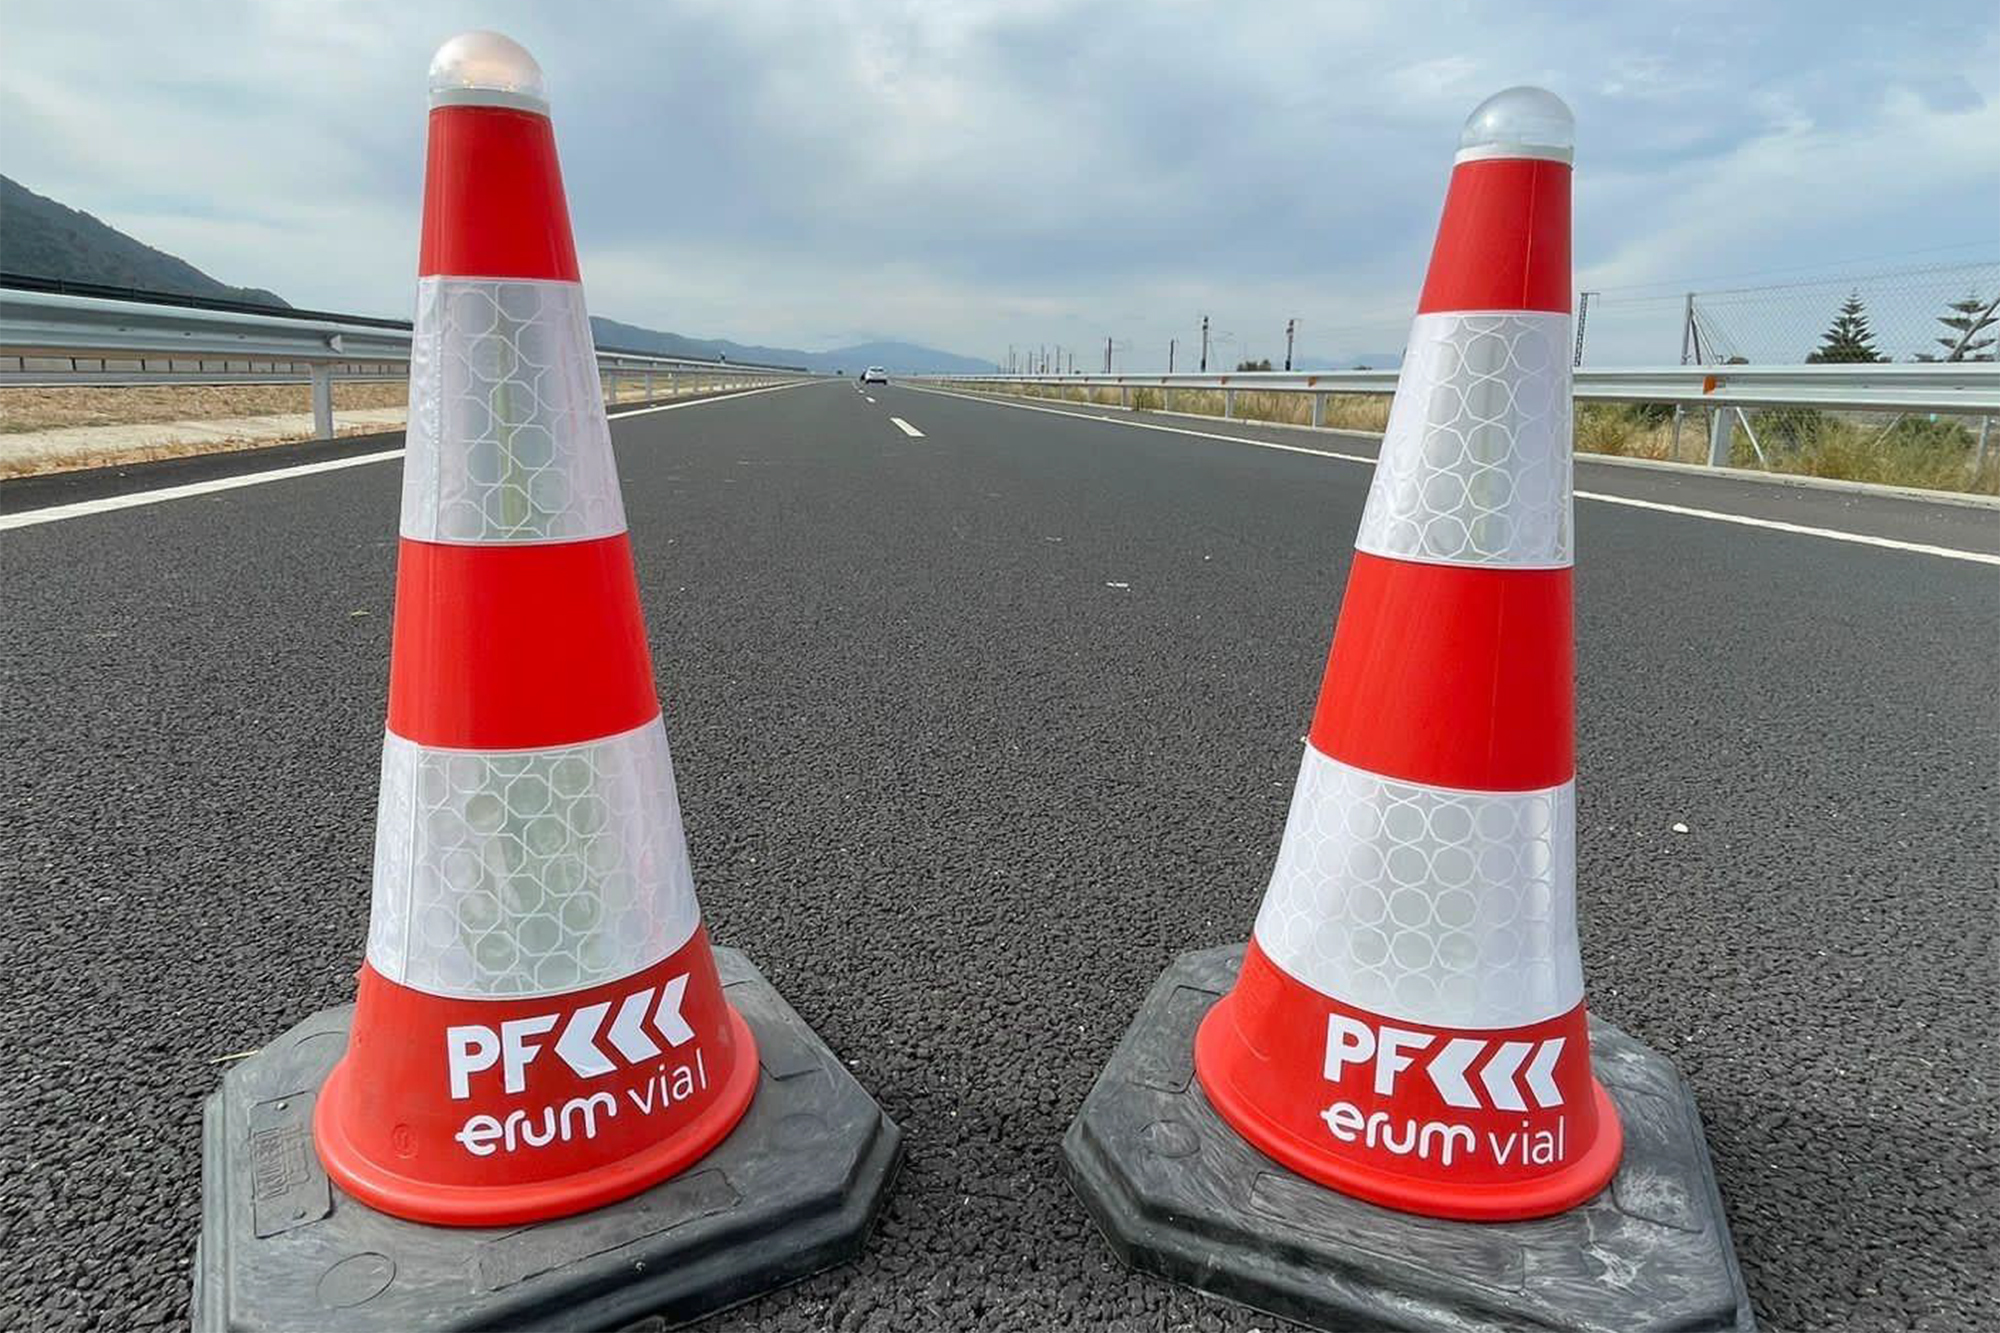 Los conos conectados e inteligentes llegan a las carreteras